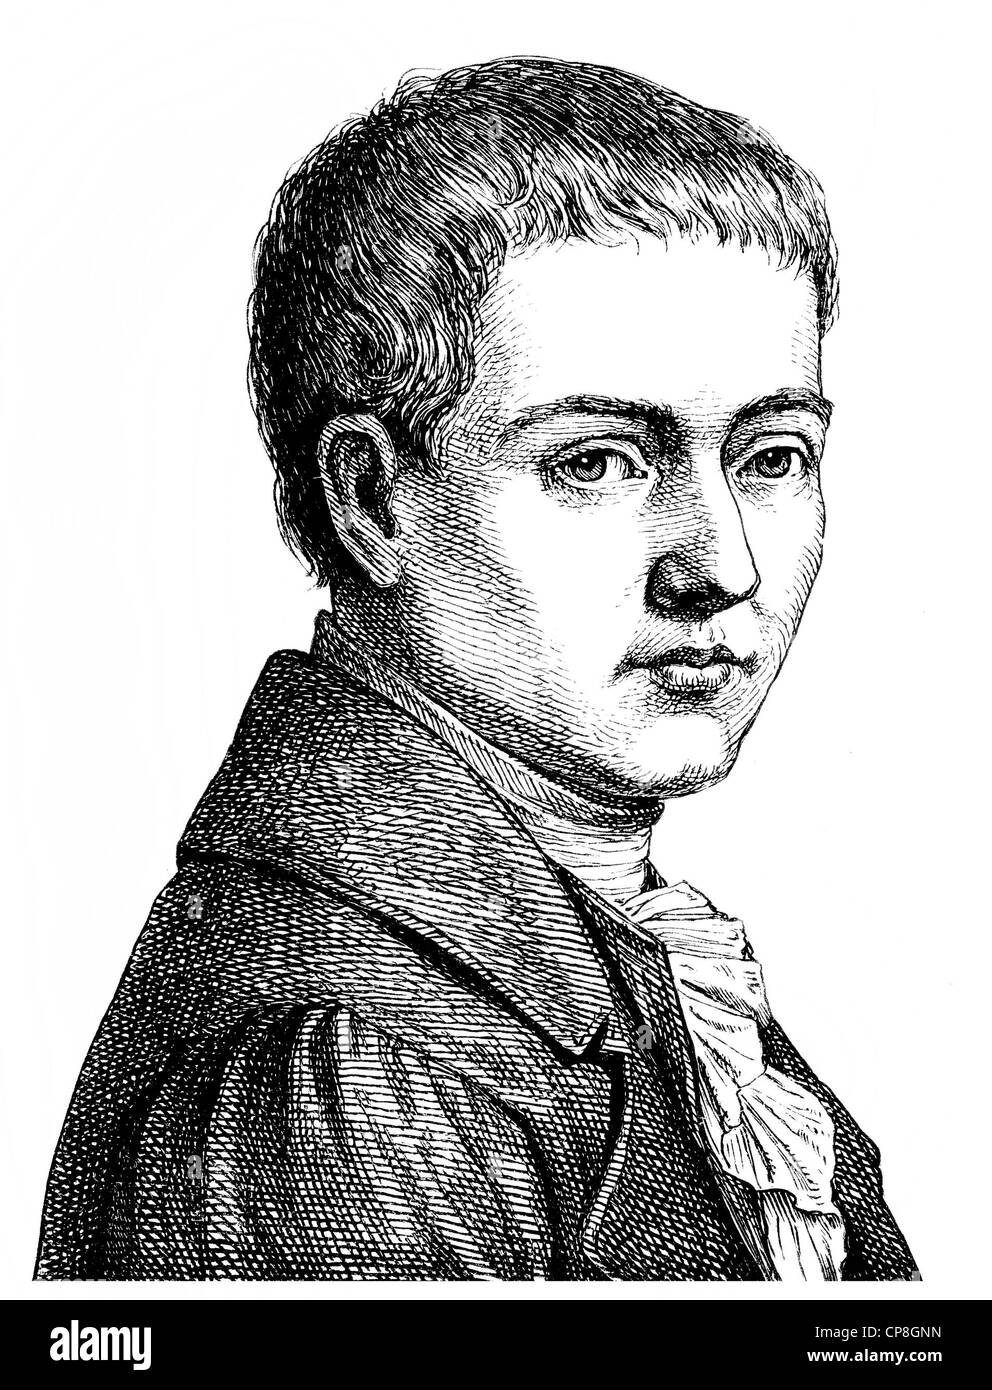 Bernd Heinrich Wilhelm von Kleist, 1777 - 1811, ein deutscher Dramatiker, Erzähler, Lyriker und Publizist, Historische Zeichnung Foto Stock